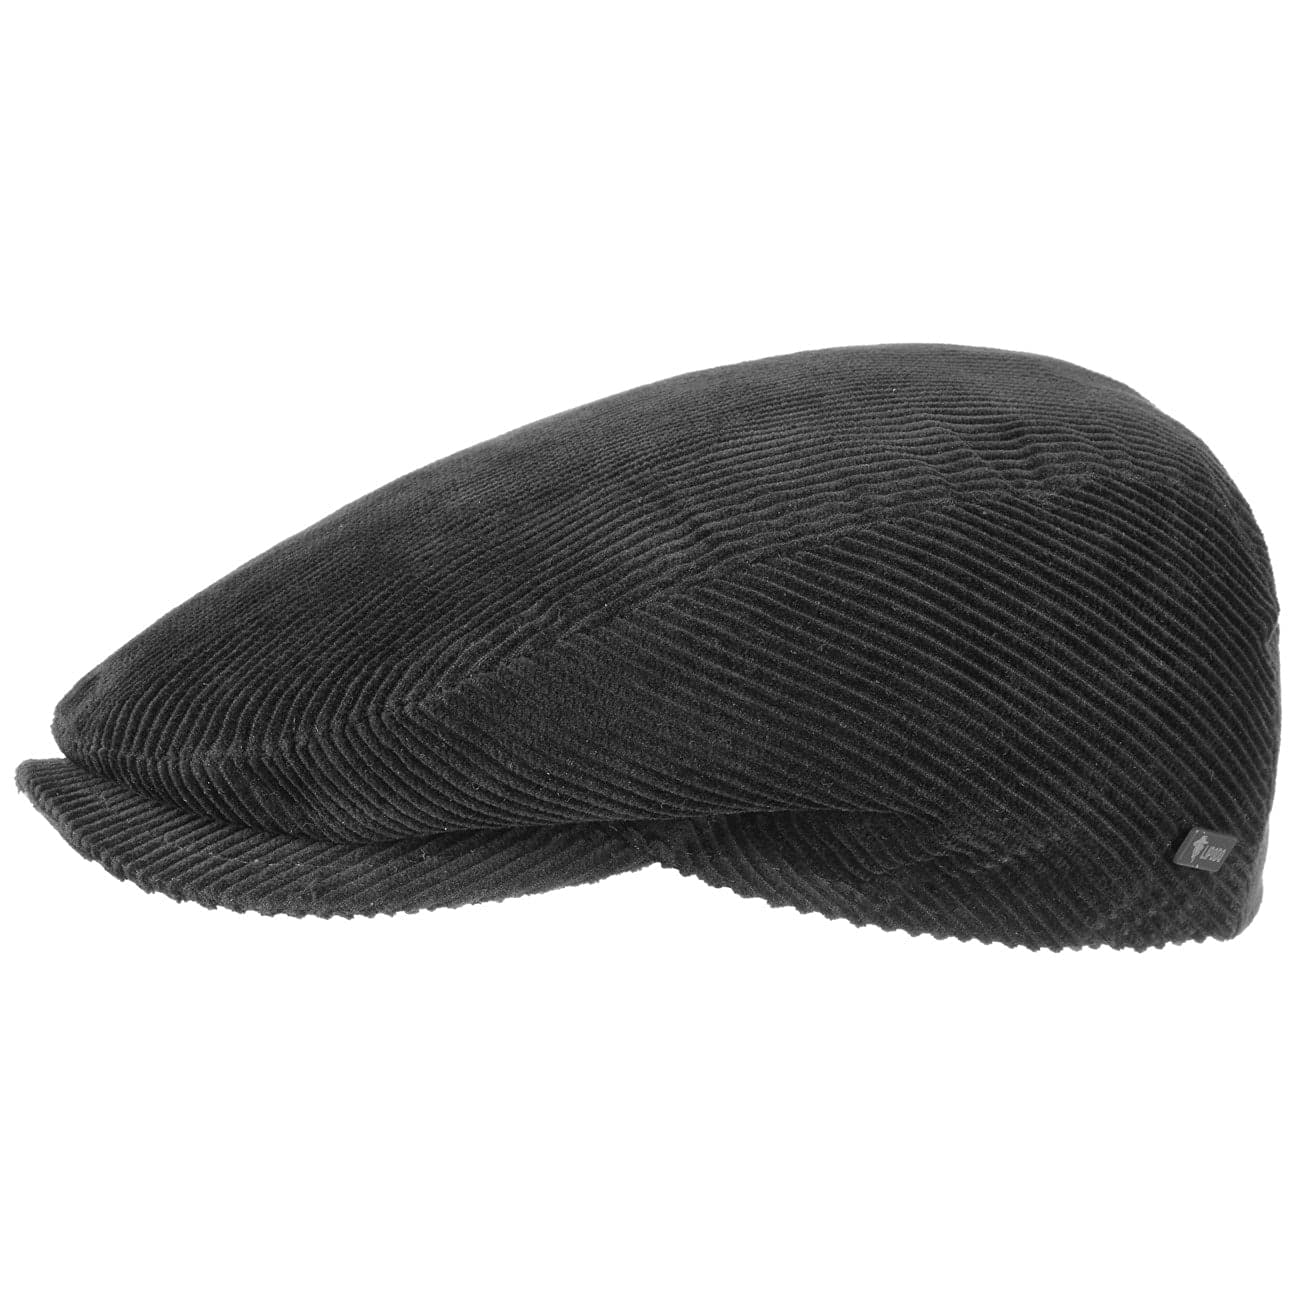 Lipodo Cord Flatcap Herren/Damen - Schirmmütze aus Baumwolle - Schiebermütze mit Futter - Cap Größen 49-61 cm - Cordmütze Sommer/Winter (XXL/62-63, schwarz)